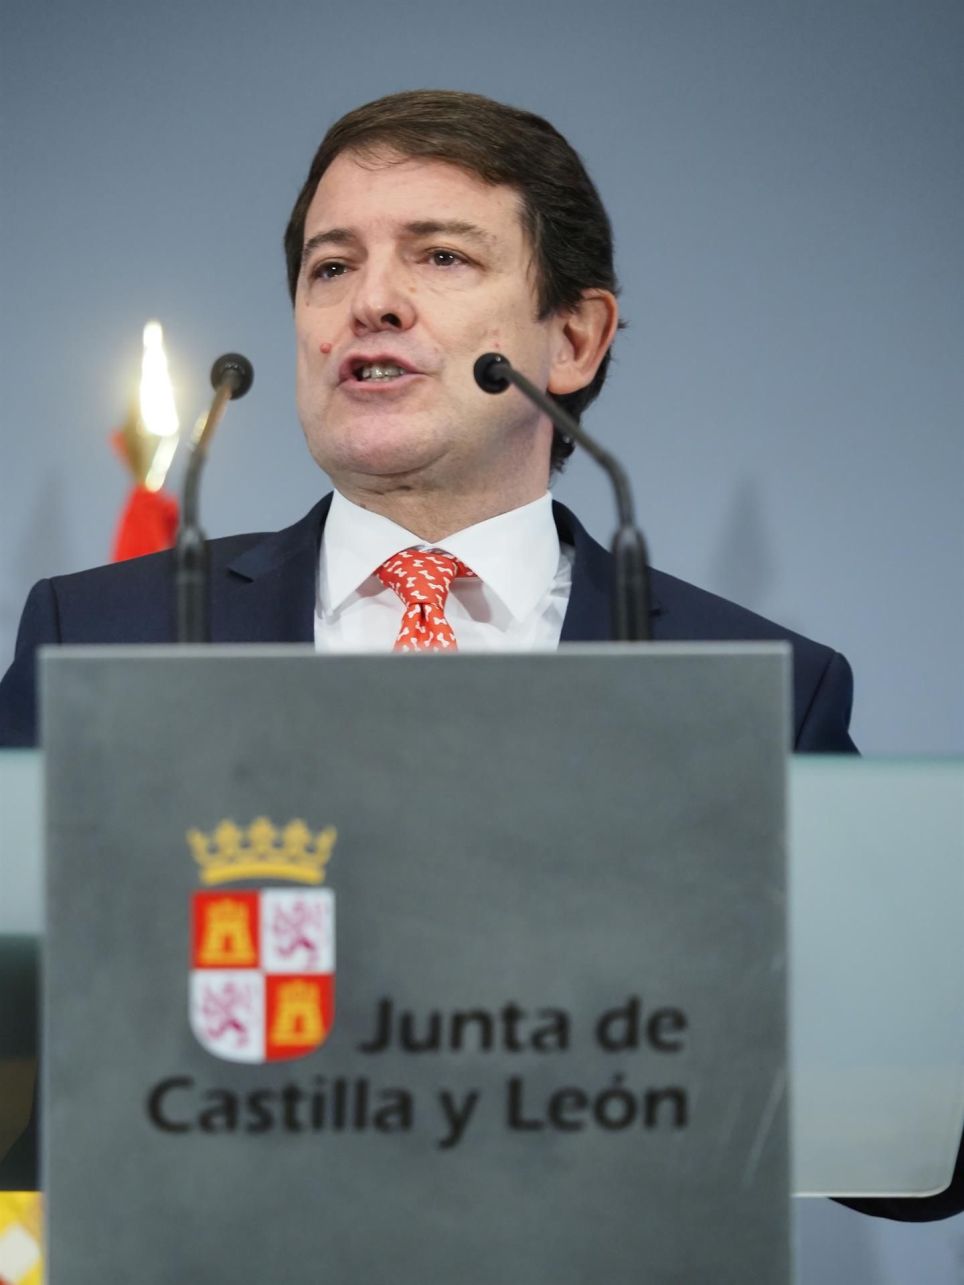 El presidente de la Junta de Castilla y León, Alfonso Fernández Mañueco, hace una declaración a la prensa para anunciar la convocatoria de elecciones anticipadas, este lunes, en Valladolid. EFE/R. GARCÍA.
